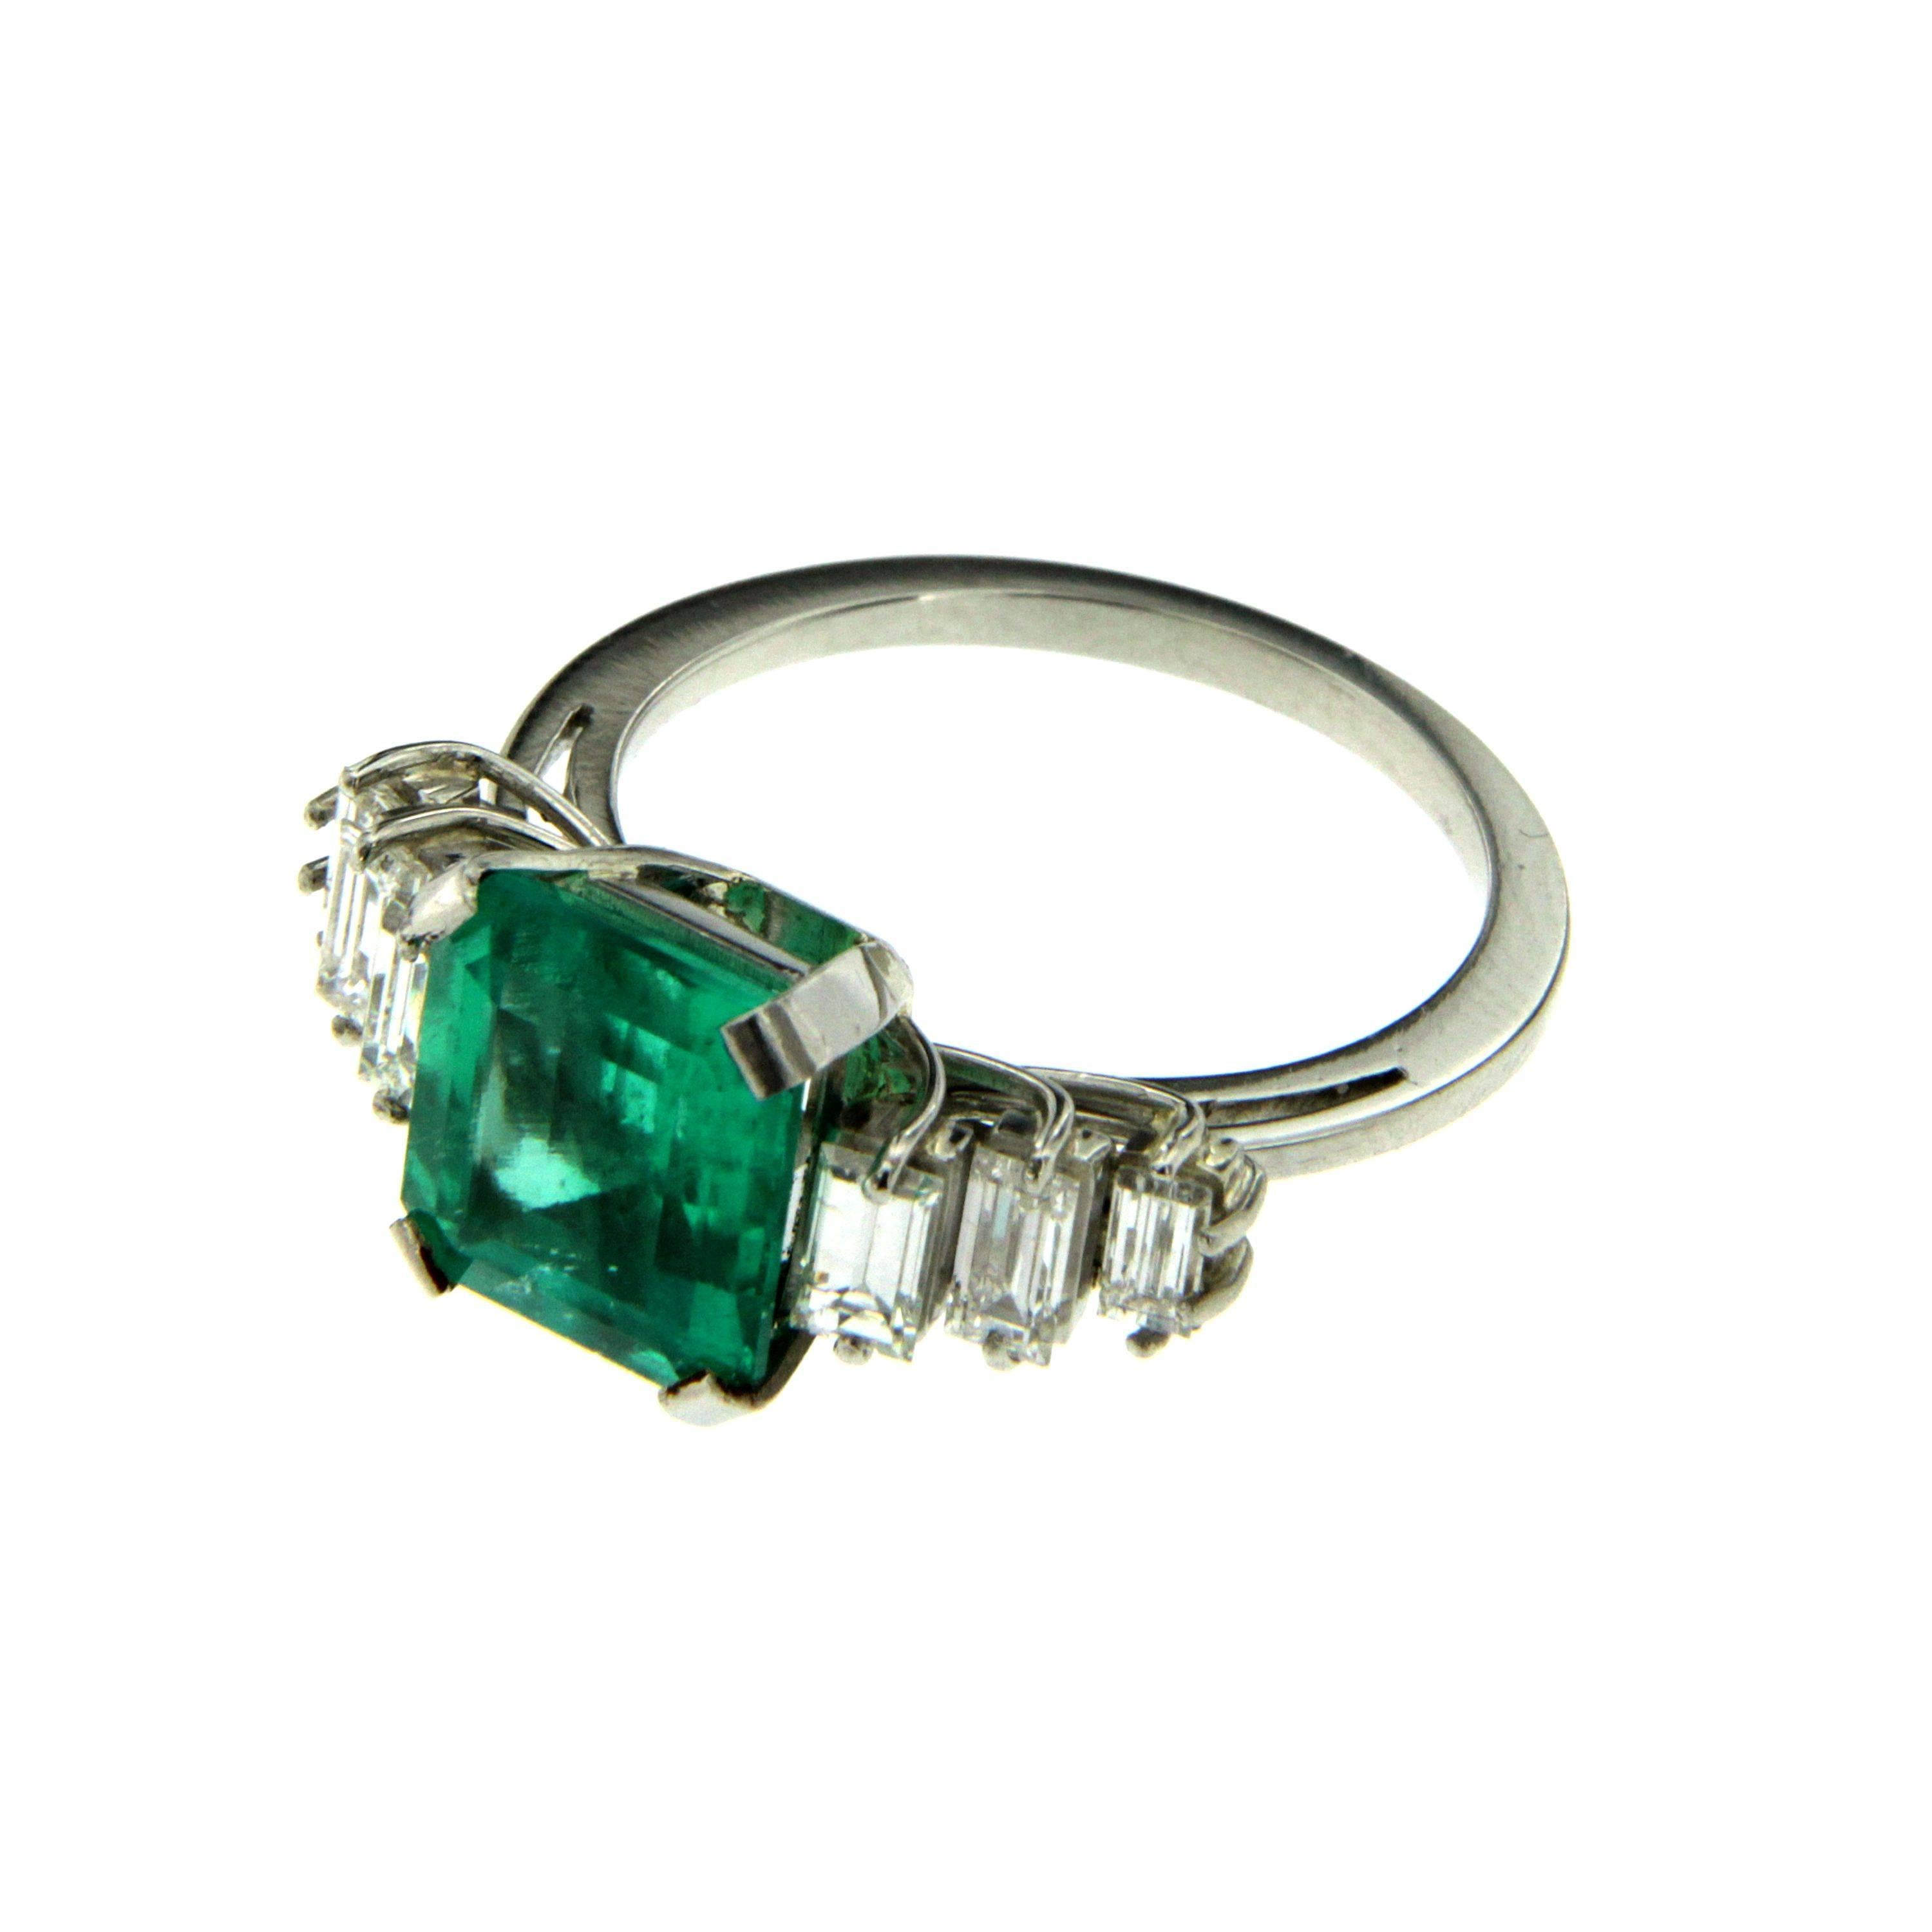 3.25 carat emerald